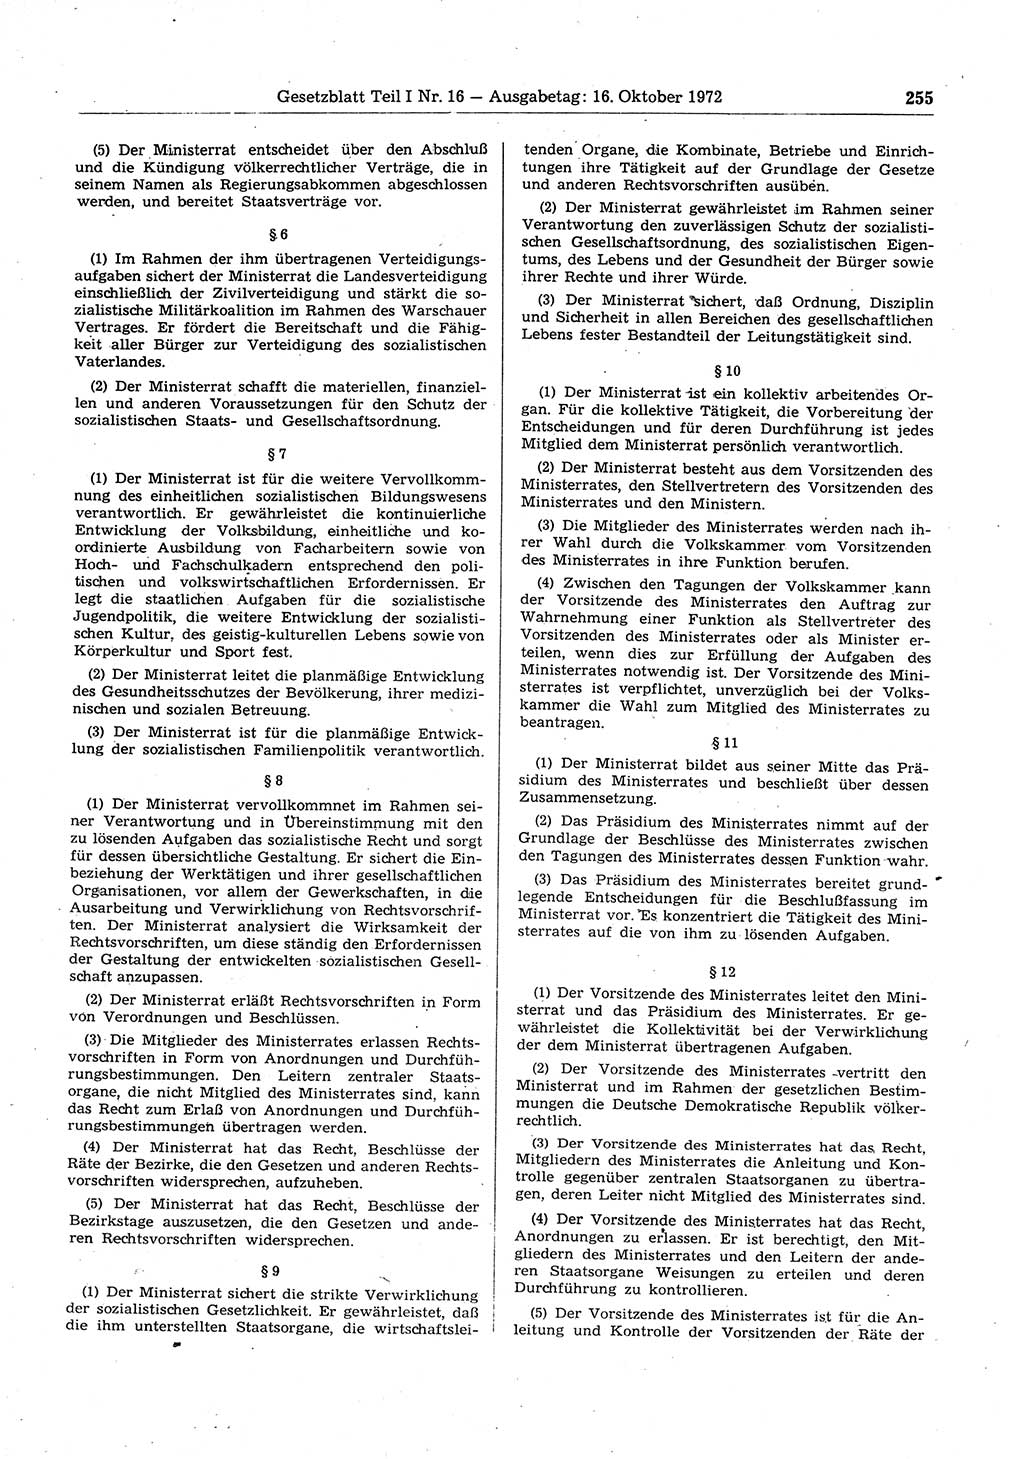 Gesetzblatt (GBl.) der Deutschen Demokratischen Republik (DDR) Teil Ⅰ 1972, Seite 255 (GBl. DDR Ⅰ 1972, S. 255)